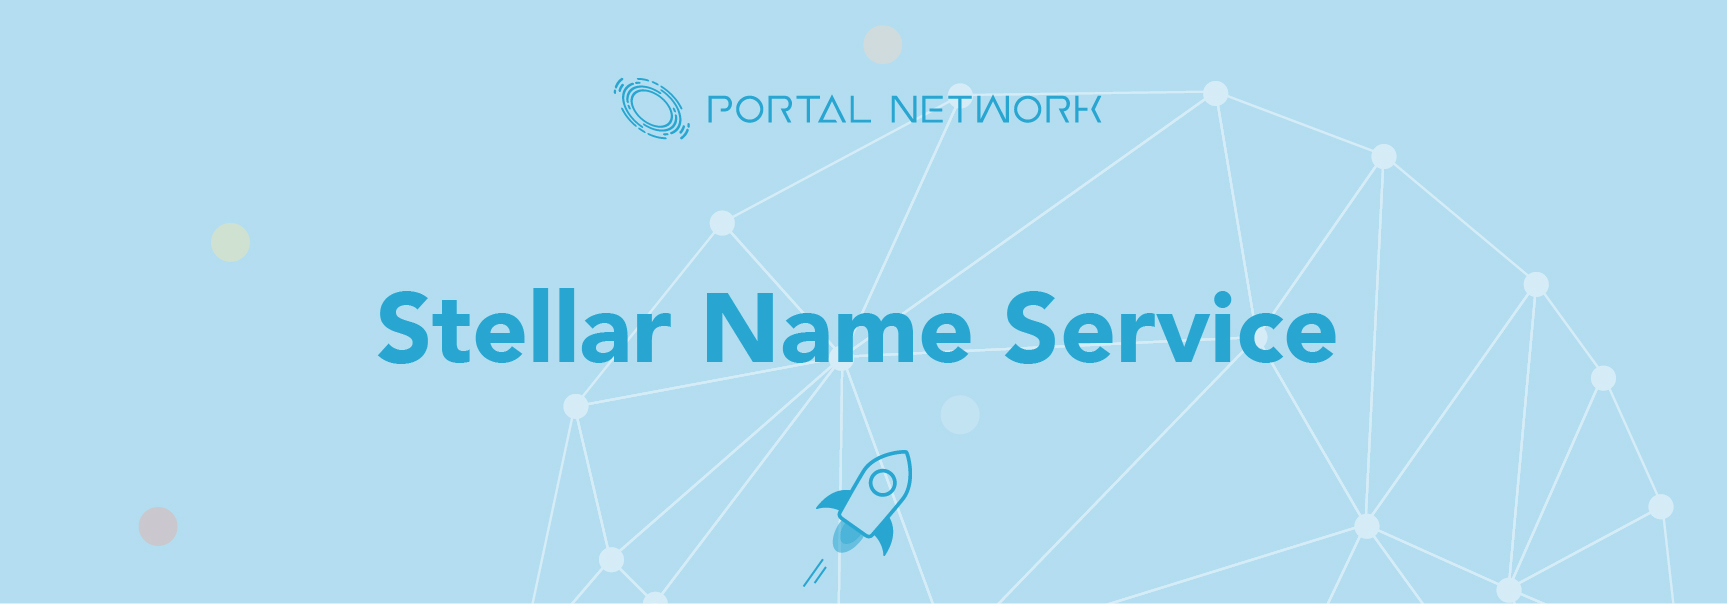 Stellar Name Service